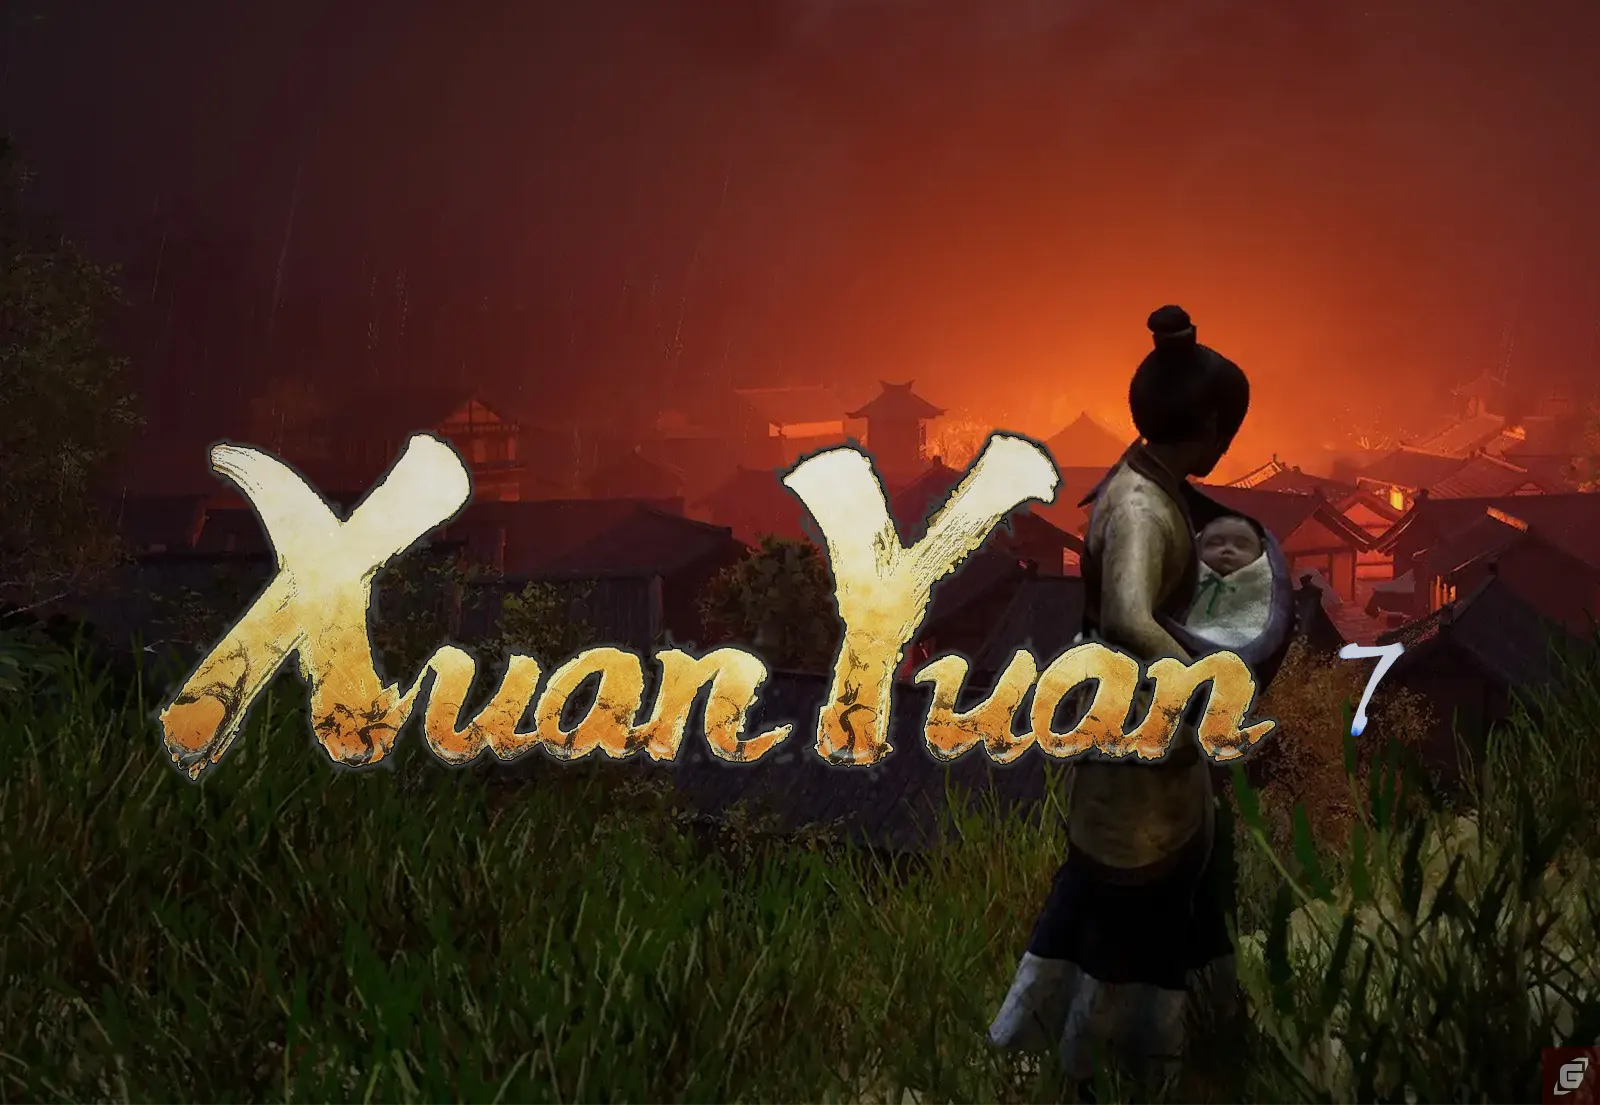 Xuan-Yuan Sword VII - Unsere Eindrücke zur kommenden Fortsetzung!